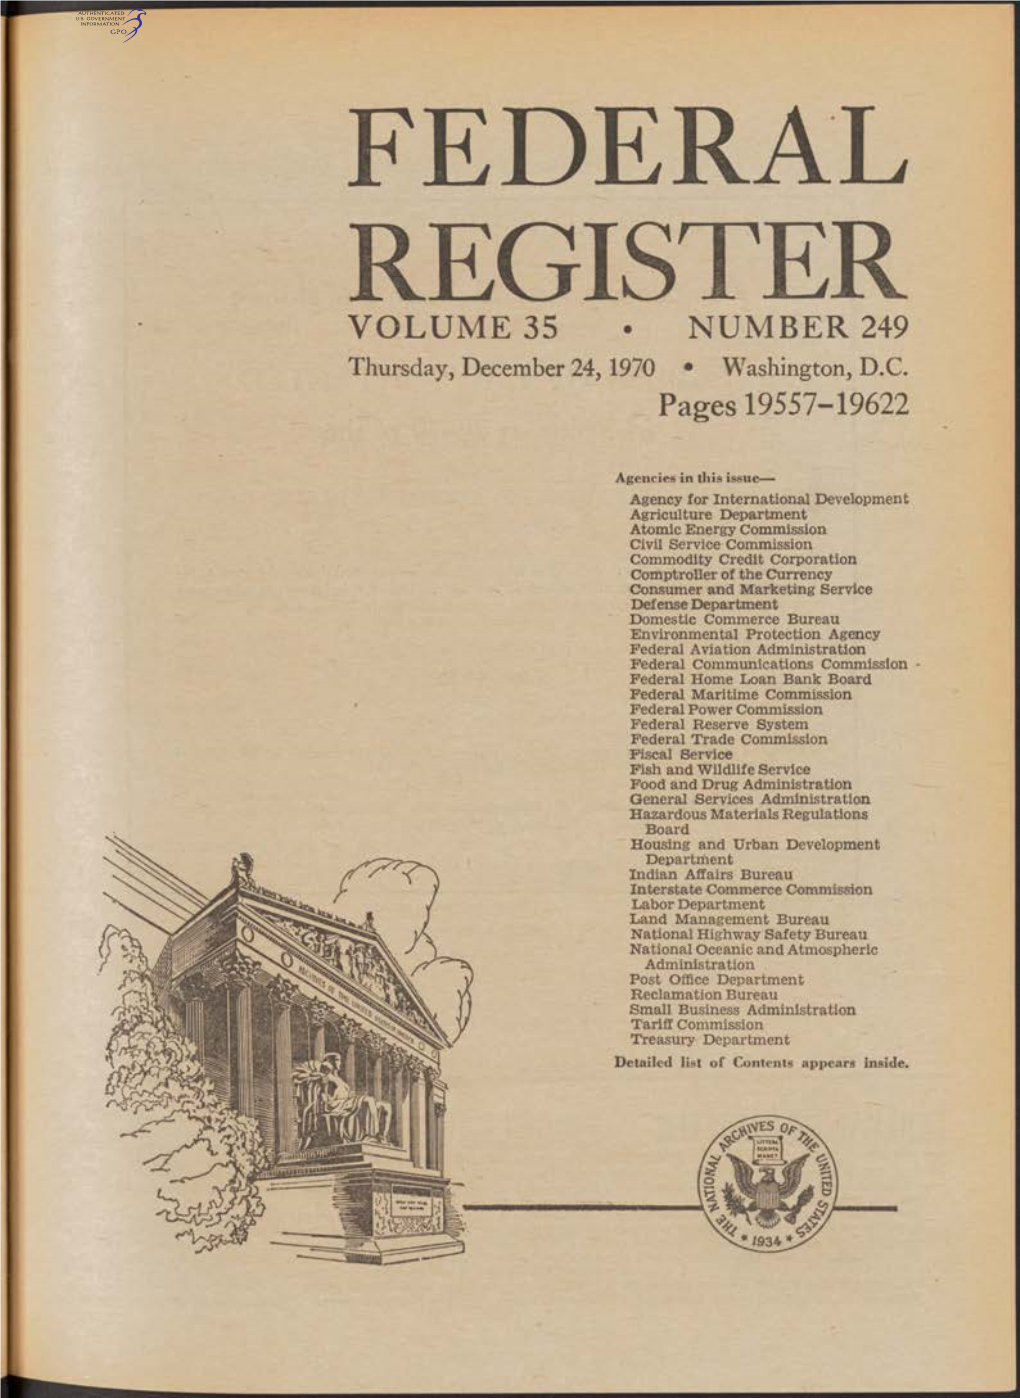 FEDERAL REGISTER VOLUME 35 • NUMBER 249 Thursday, December 24,1970 • Washington, D.C